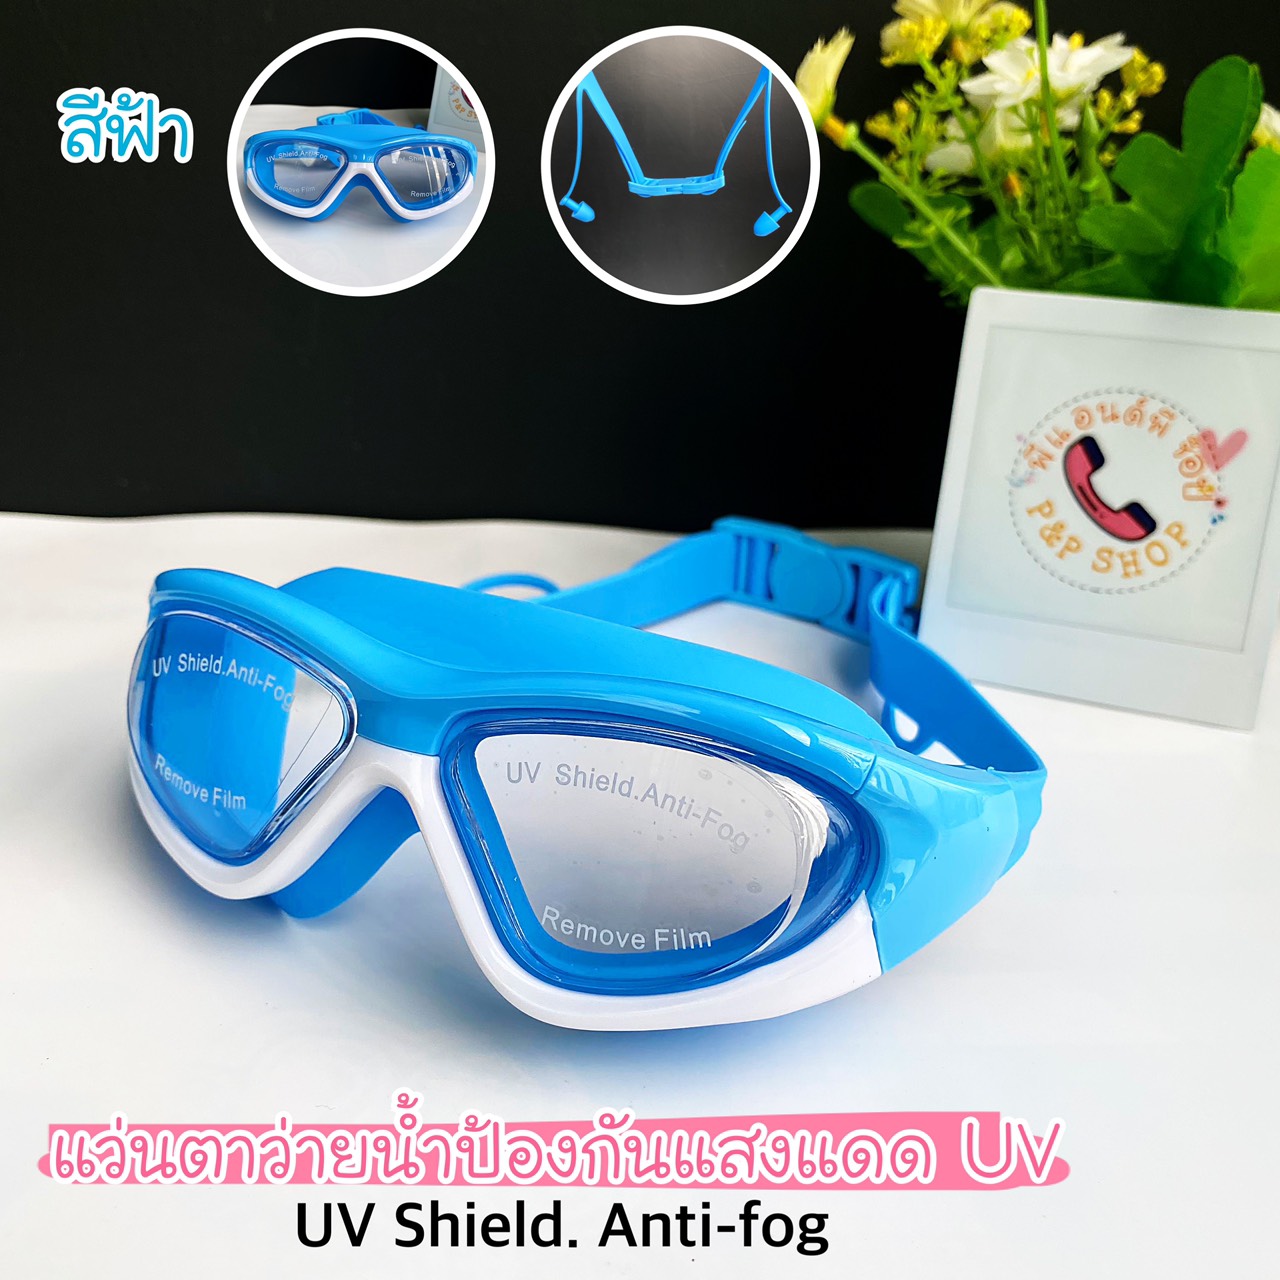 มุมมองเพิ่มเติมของสินค้า *พร้อมส่ง*แว่นตาว่ายน้ำเด็ก สีสันสดใส แว่นว่ายน้ำเด็กป้องกันแสงแดด UV  ไม่เป็นฝ้า แว่นตาเด็ก ปรับระดับได้ แว่นกันน้ำ มี